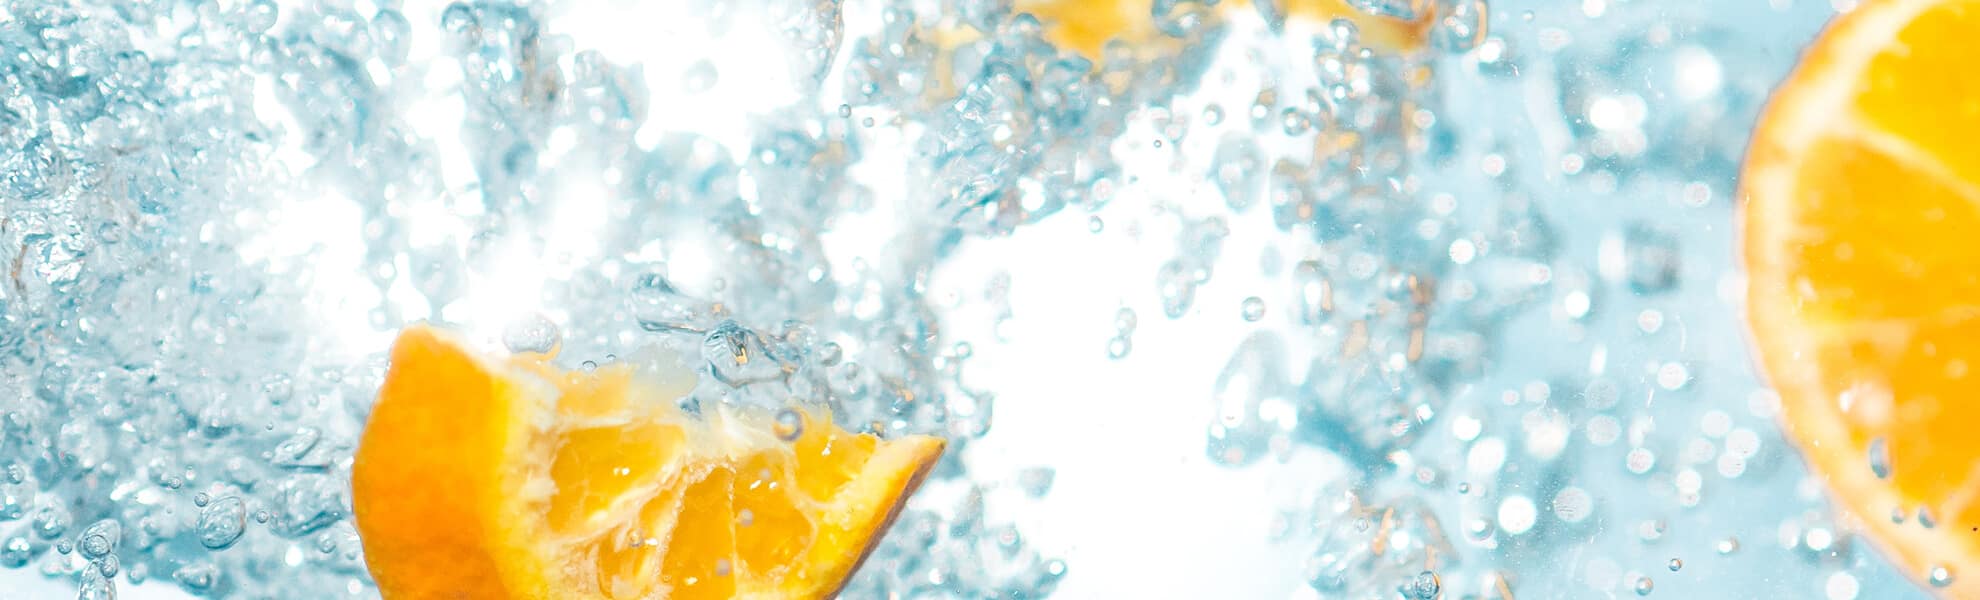 5-alternativas-al-agua-bebidas-sanas-y-refrescantes-elaboradas-con-frutas-id-102